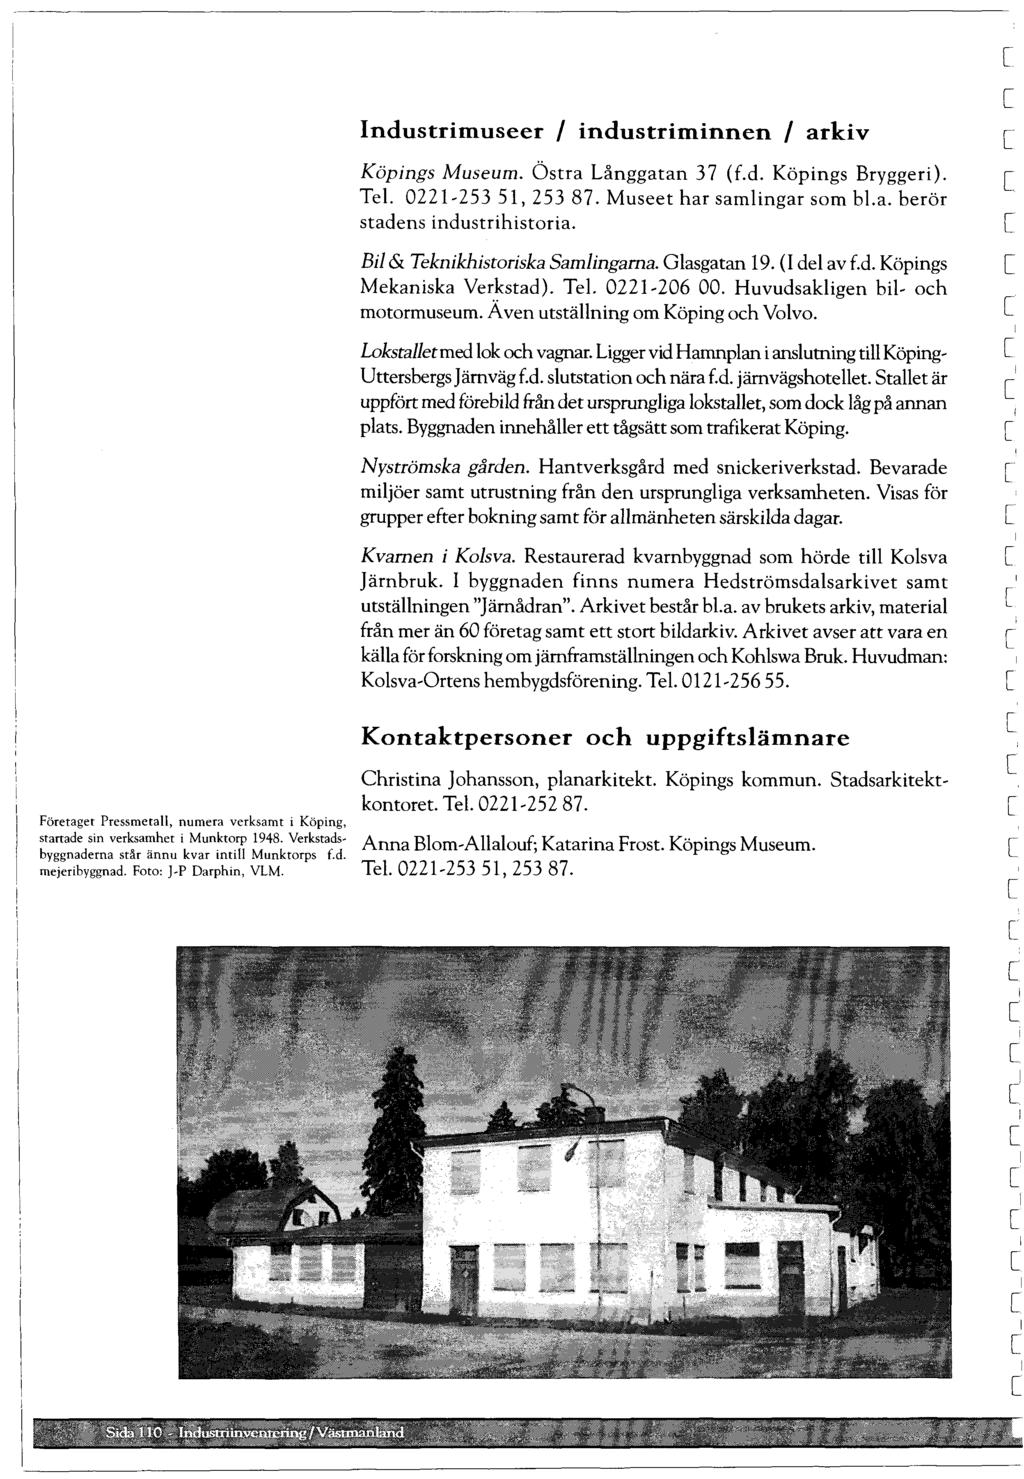 Företaget Pressmeta, numera verksamt i Köping, stanade sin verksamher i Munktorp 1948. Verkstadsbyggnaderna står ännu kvar inti Munktorps f.d. mejeribyggnad. Foto: -p Darphin, VLM.